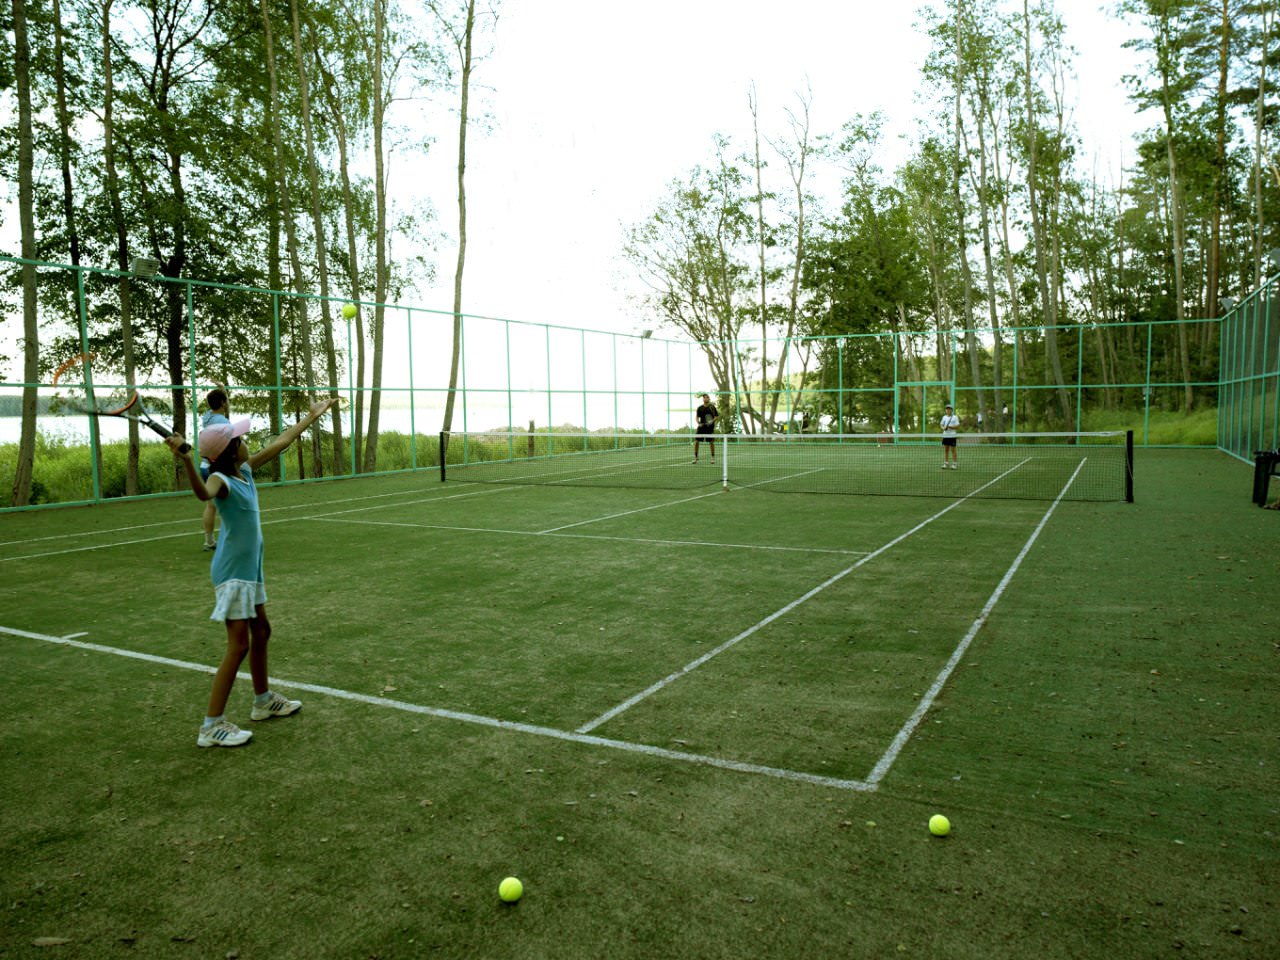 Травяное покрытие теннисного корта